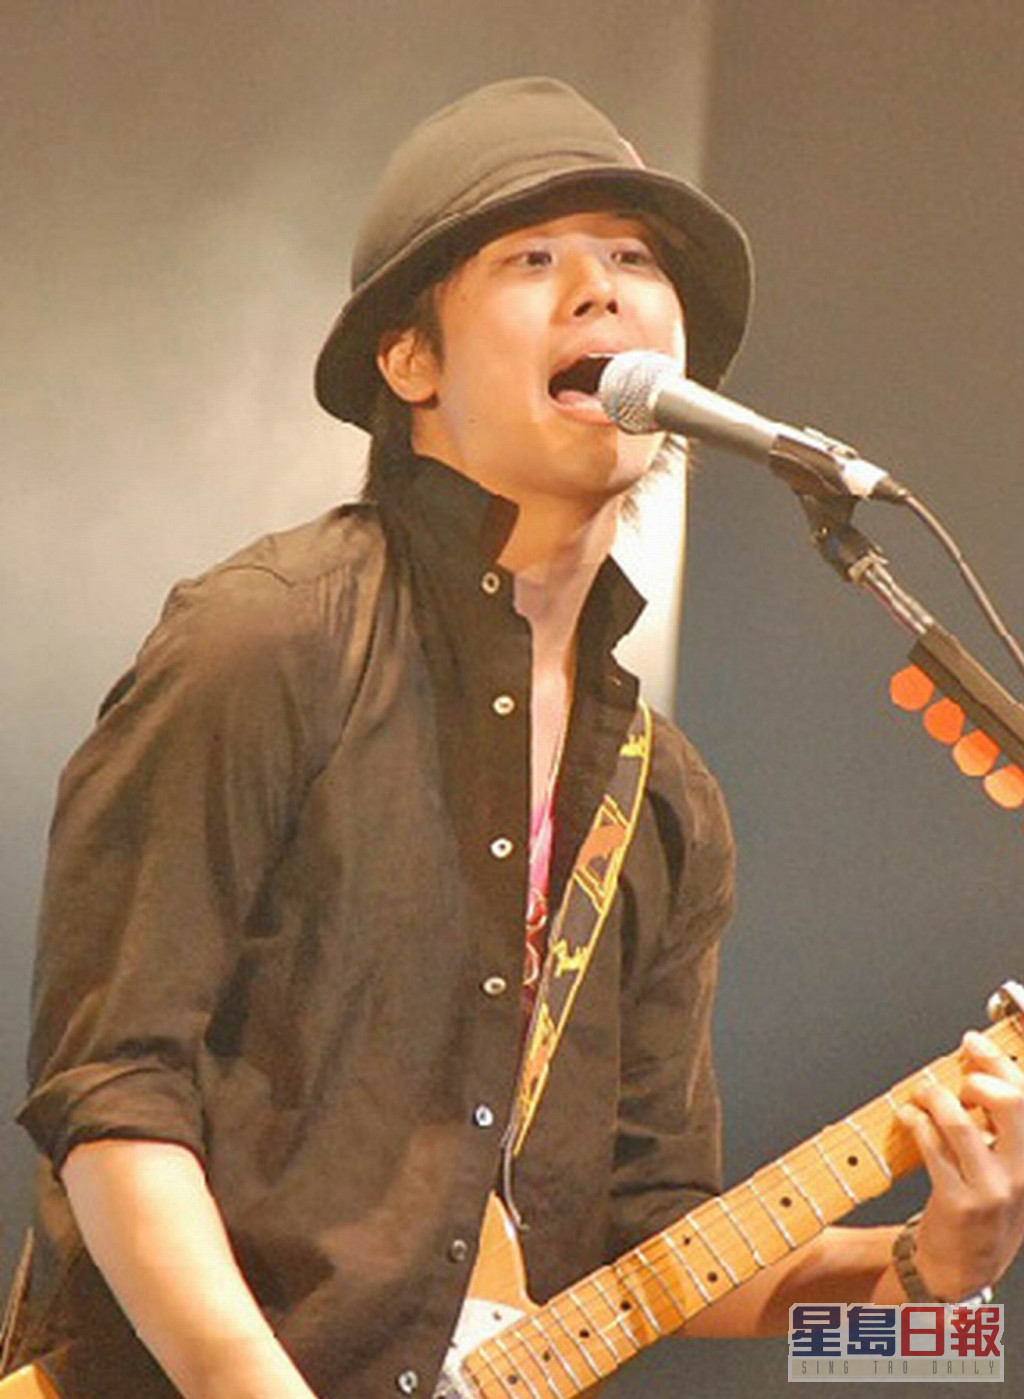 三浦佑太朗是一名歌手。